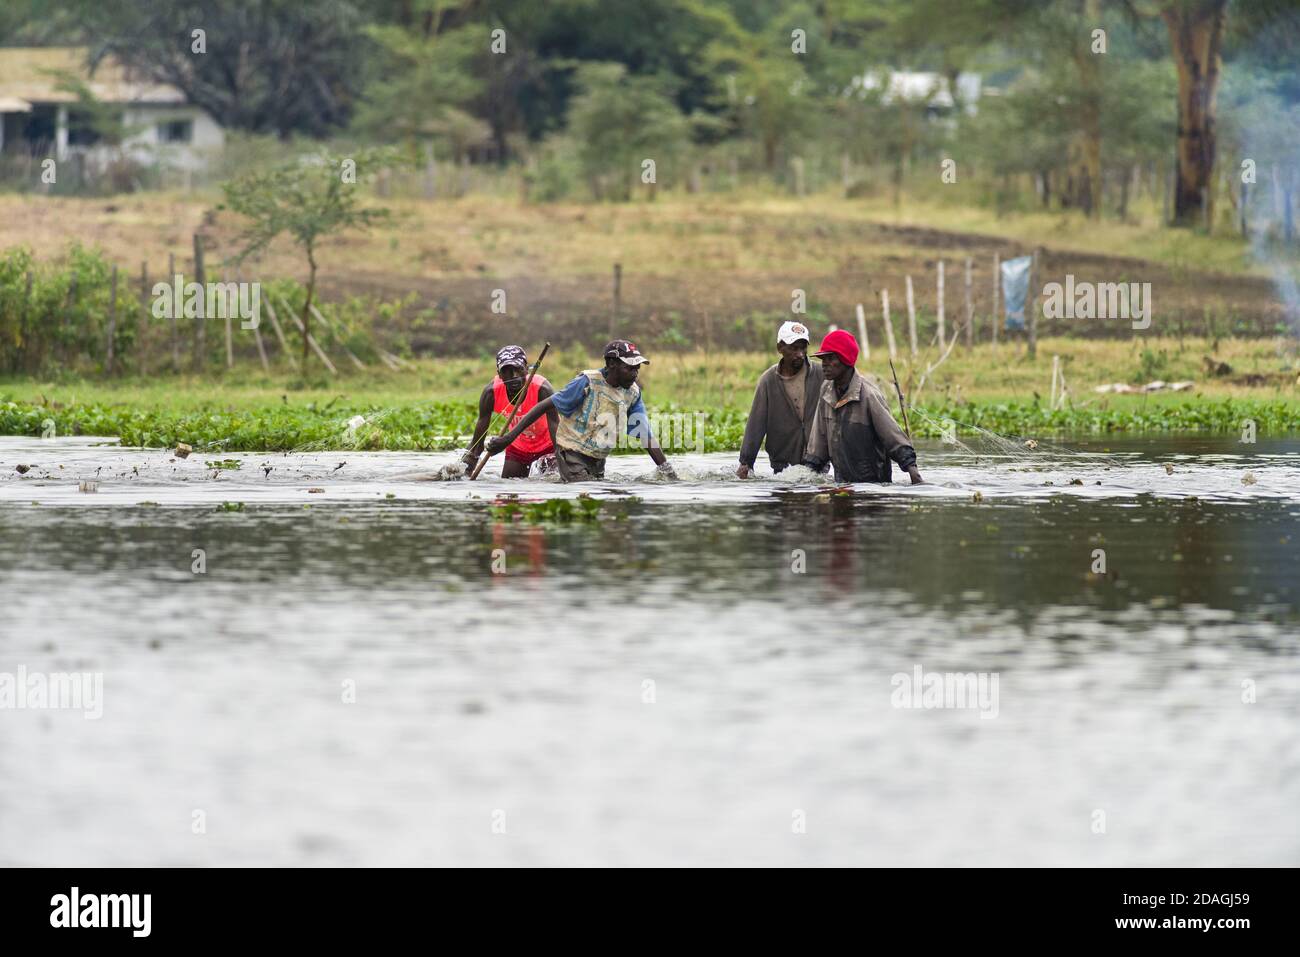 Kenyan fishermen walking in the water with net fishing in lake Naivasha, Kenya, East Africa Stock Photo